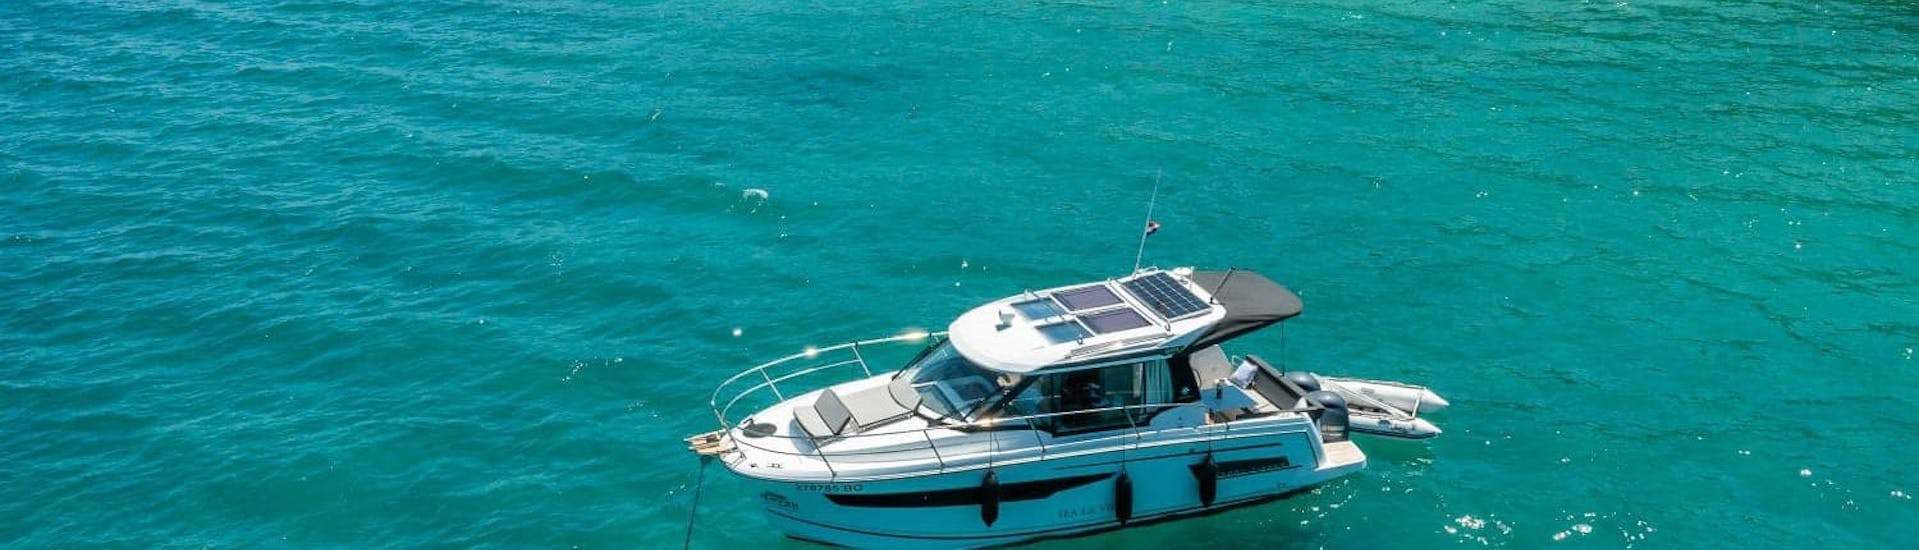 Ein Boot im türkisen Wasser von Sea la Vie Charter Umag beim Boatsverleih in Umag (bis zu 10 Personen) mit Bootsführerschein.